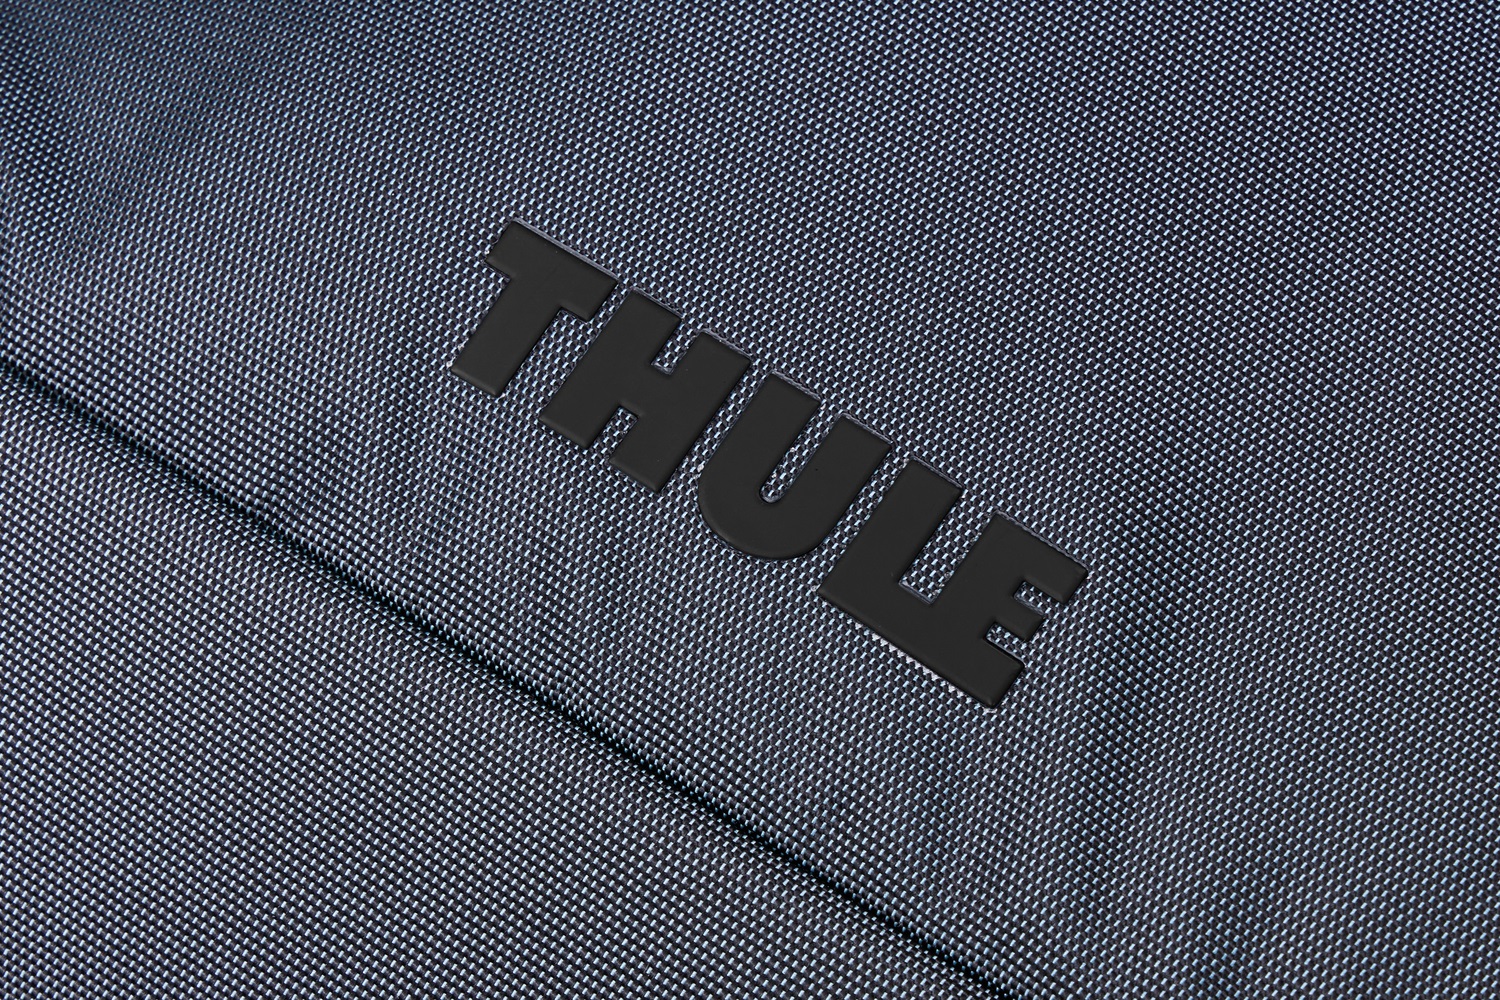 Thule Subterra 2 putna torba zapremnine 35L - plava